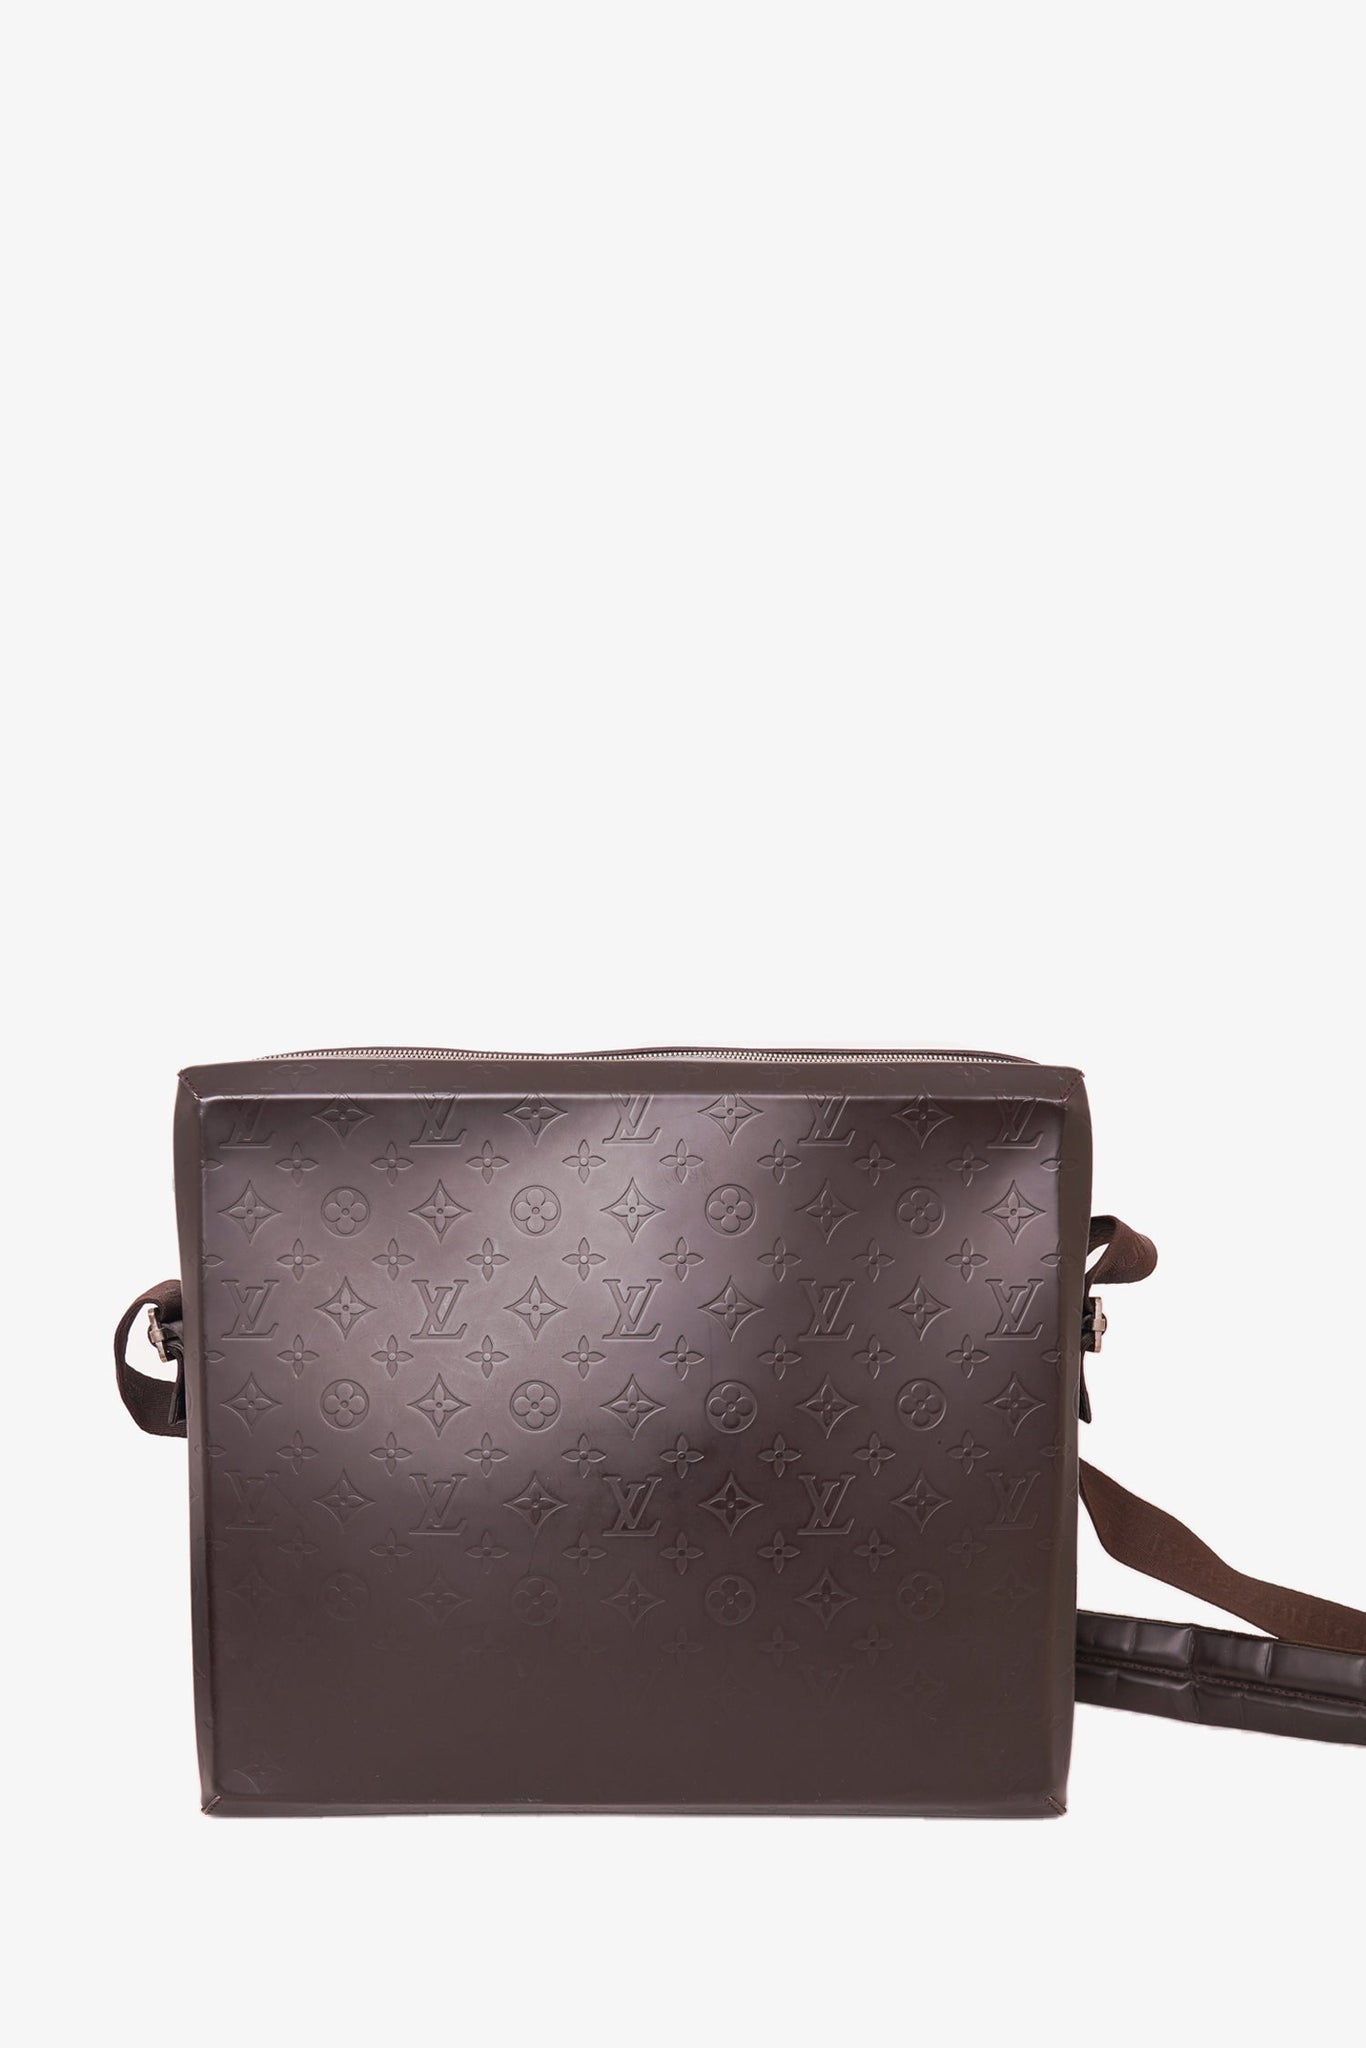 Louis Vuitton Brown Monogram Glace Fonzie Dark brown Leather Pony